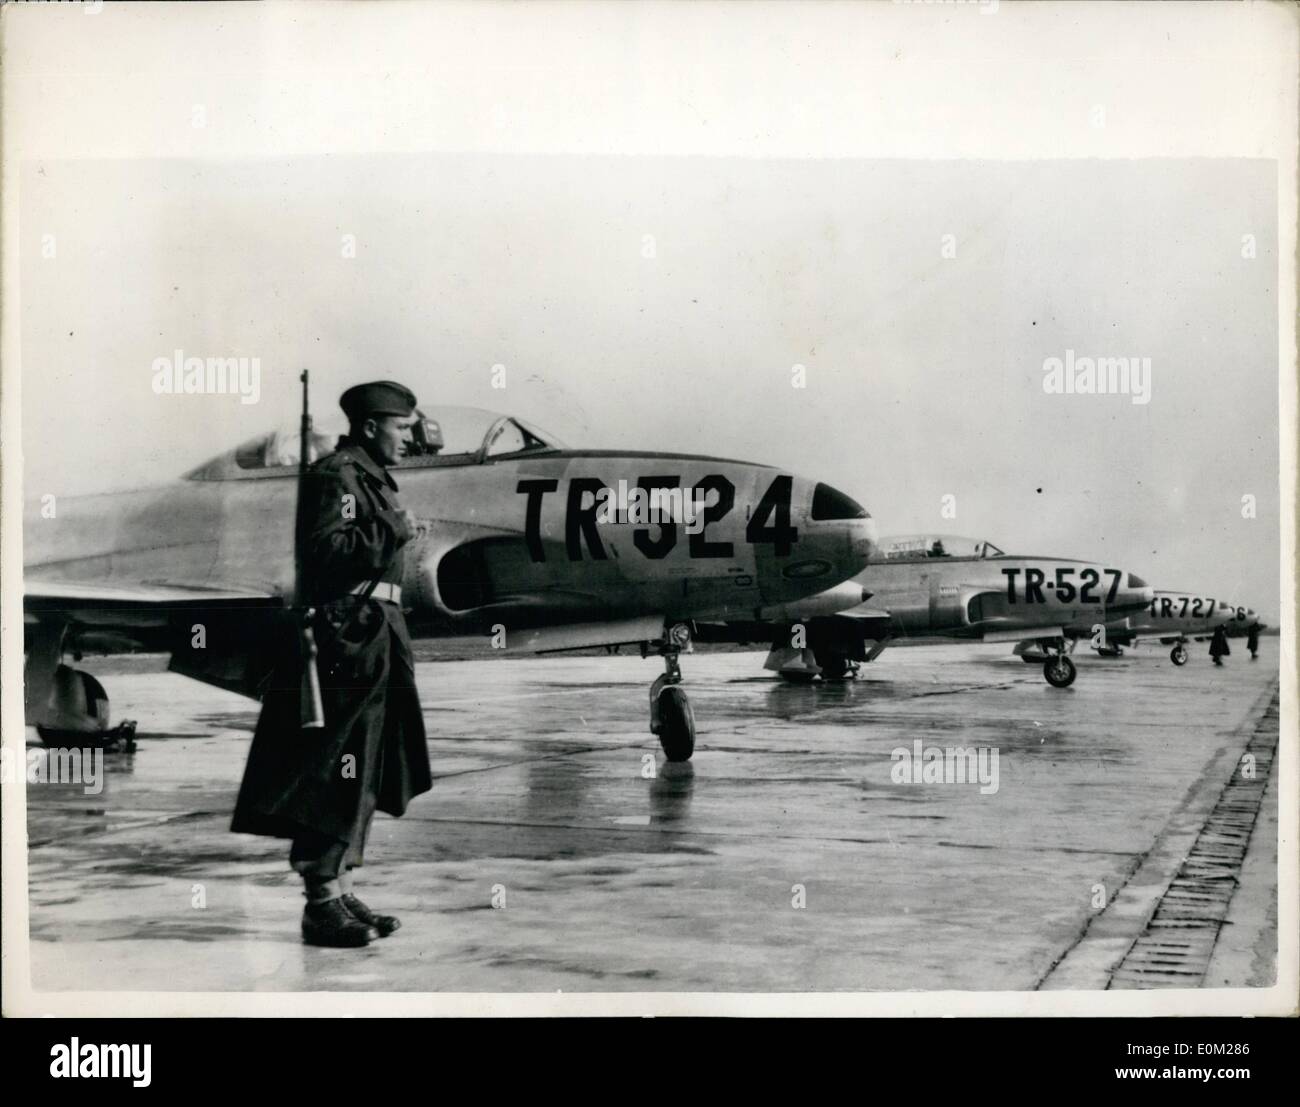 3. März 1953 - Jet Flugzeuge für Titos Luftwaffe: unter bewaffnetem Schutz sind diese vier Jet-Kampfflugzeuge, die diese Woche unter den amerikanischen militärischen Hilfsprogramm in Jugoslawien angekommen. Sie sind die ersten Düsenflugzeuge der Jugoslawien Luftwaffe. Stockfoto